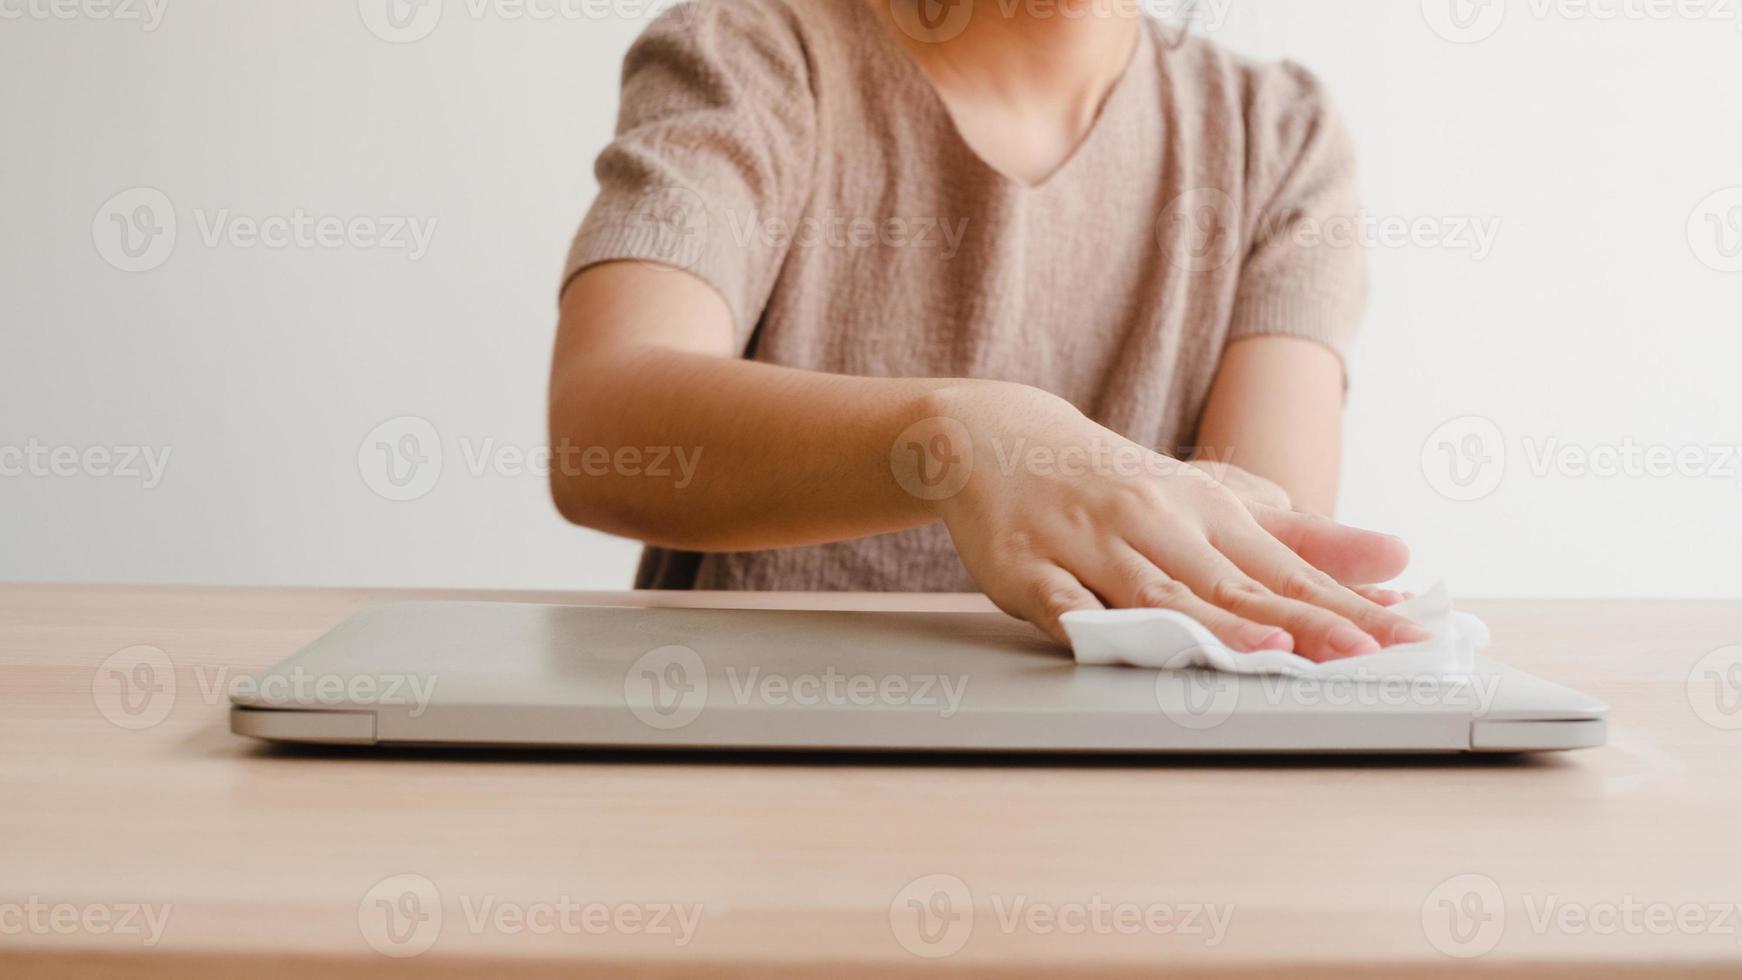 aziatische vrouw die alcoholspray gebruikt op een schone laptop voor het openen om het coronavirus te beschermen. vrouwelijke schone computer voor hygiëne wanneer sociale afstand thuis blijft en zelfquarantainetijd. foto